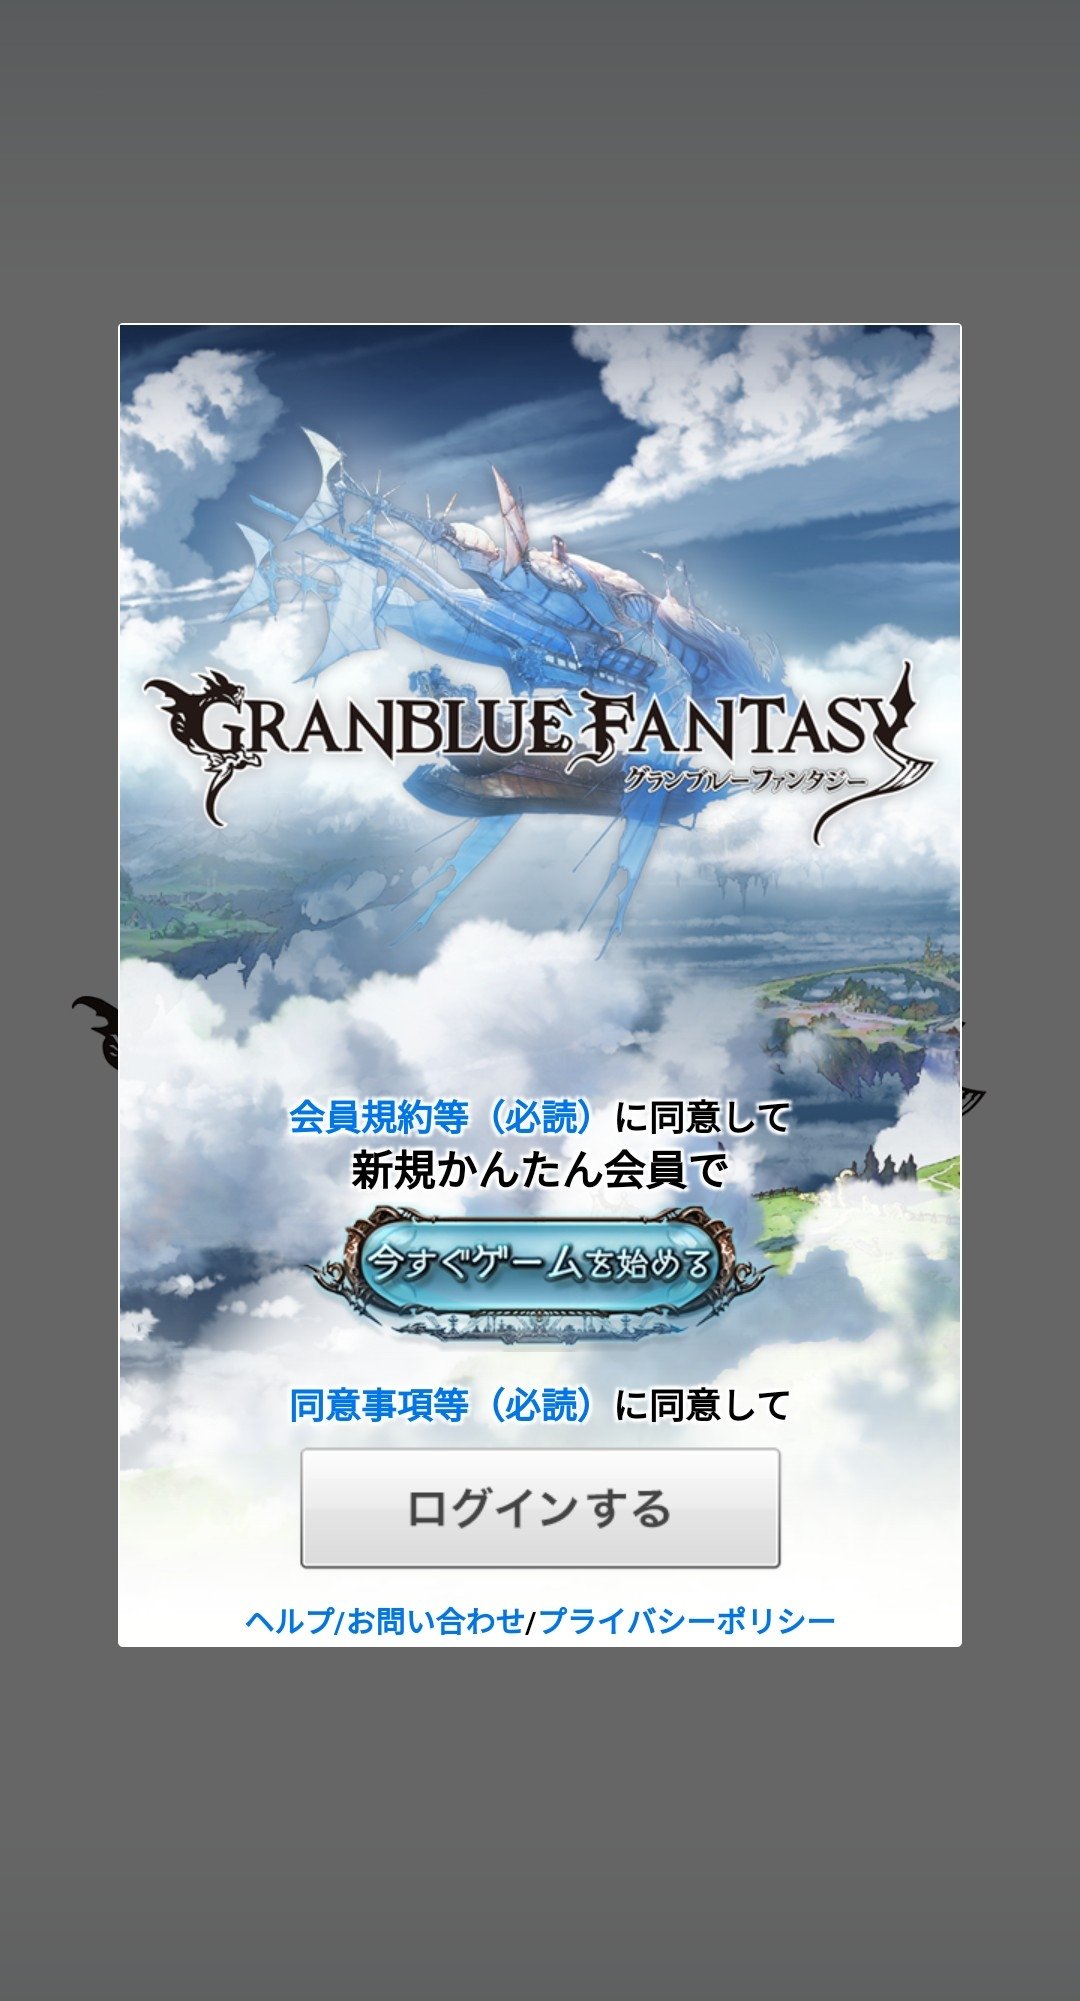 Baixar a última versão do Granblue Fantasy APK para Android grátis em  Português no CCM - CCM